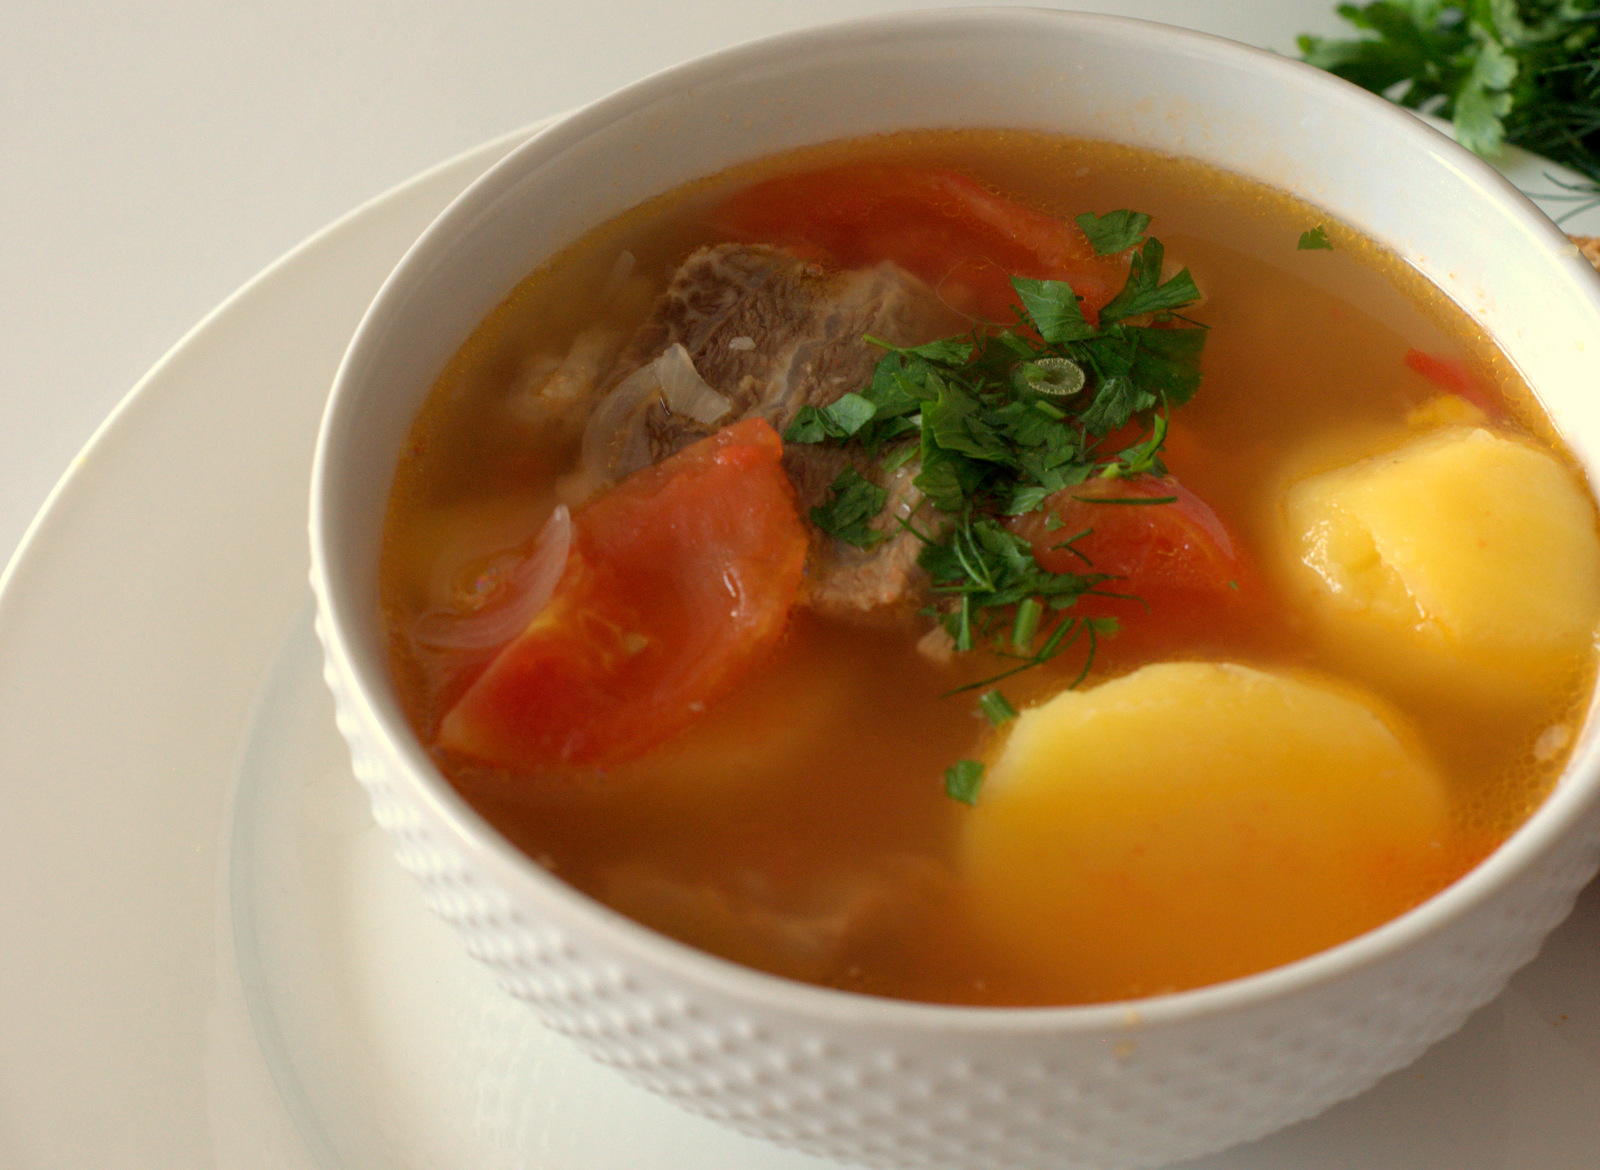 Reteta de supa tatareasca de berbecut -Shurpa